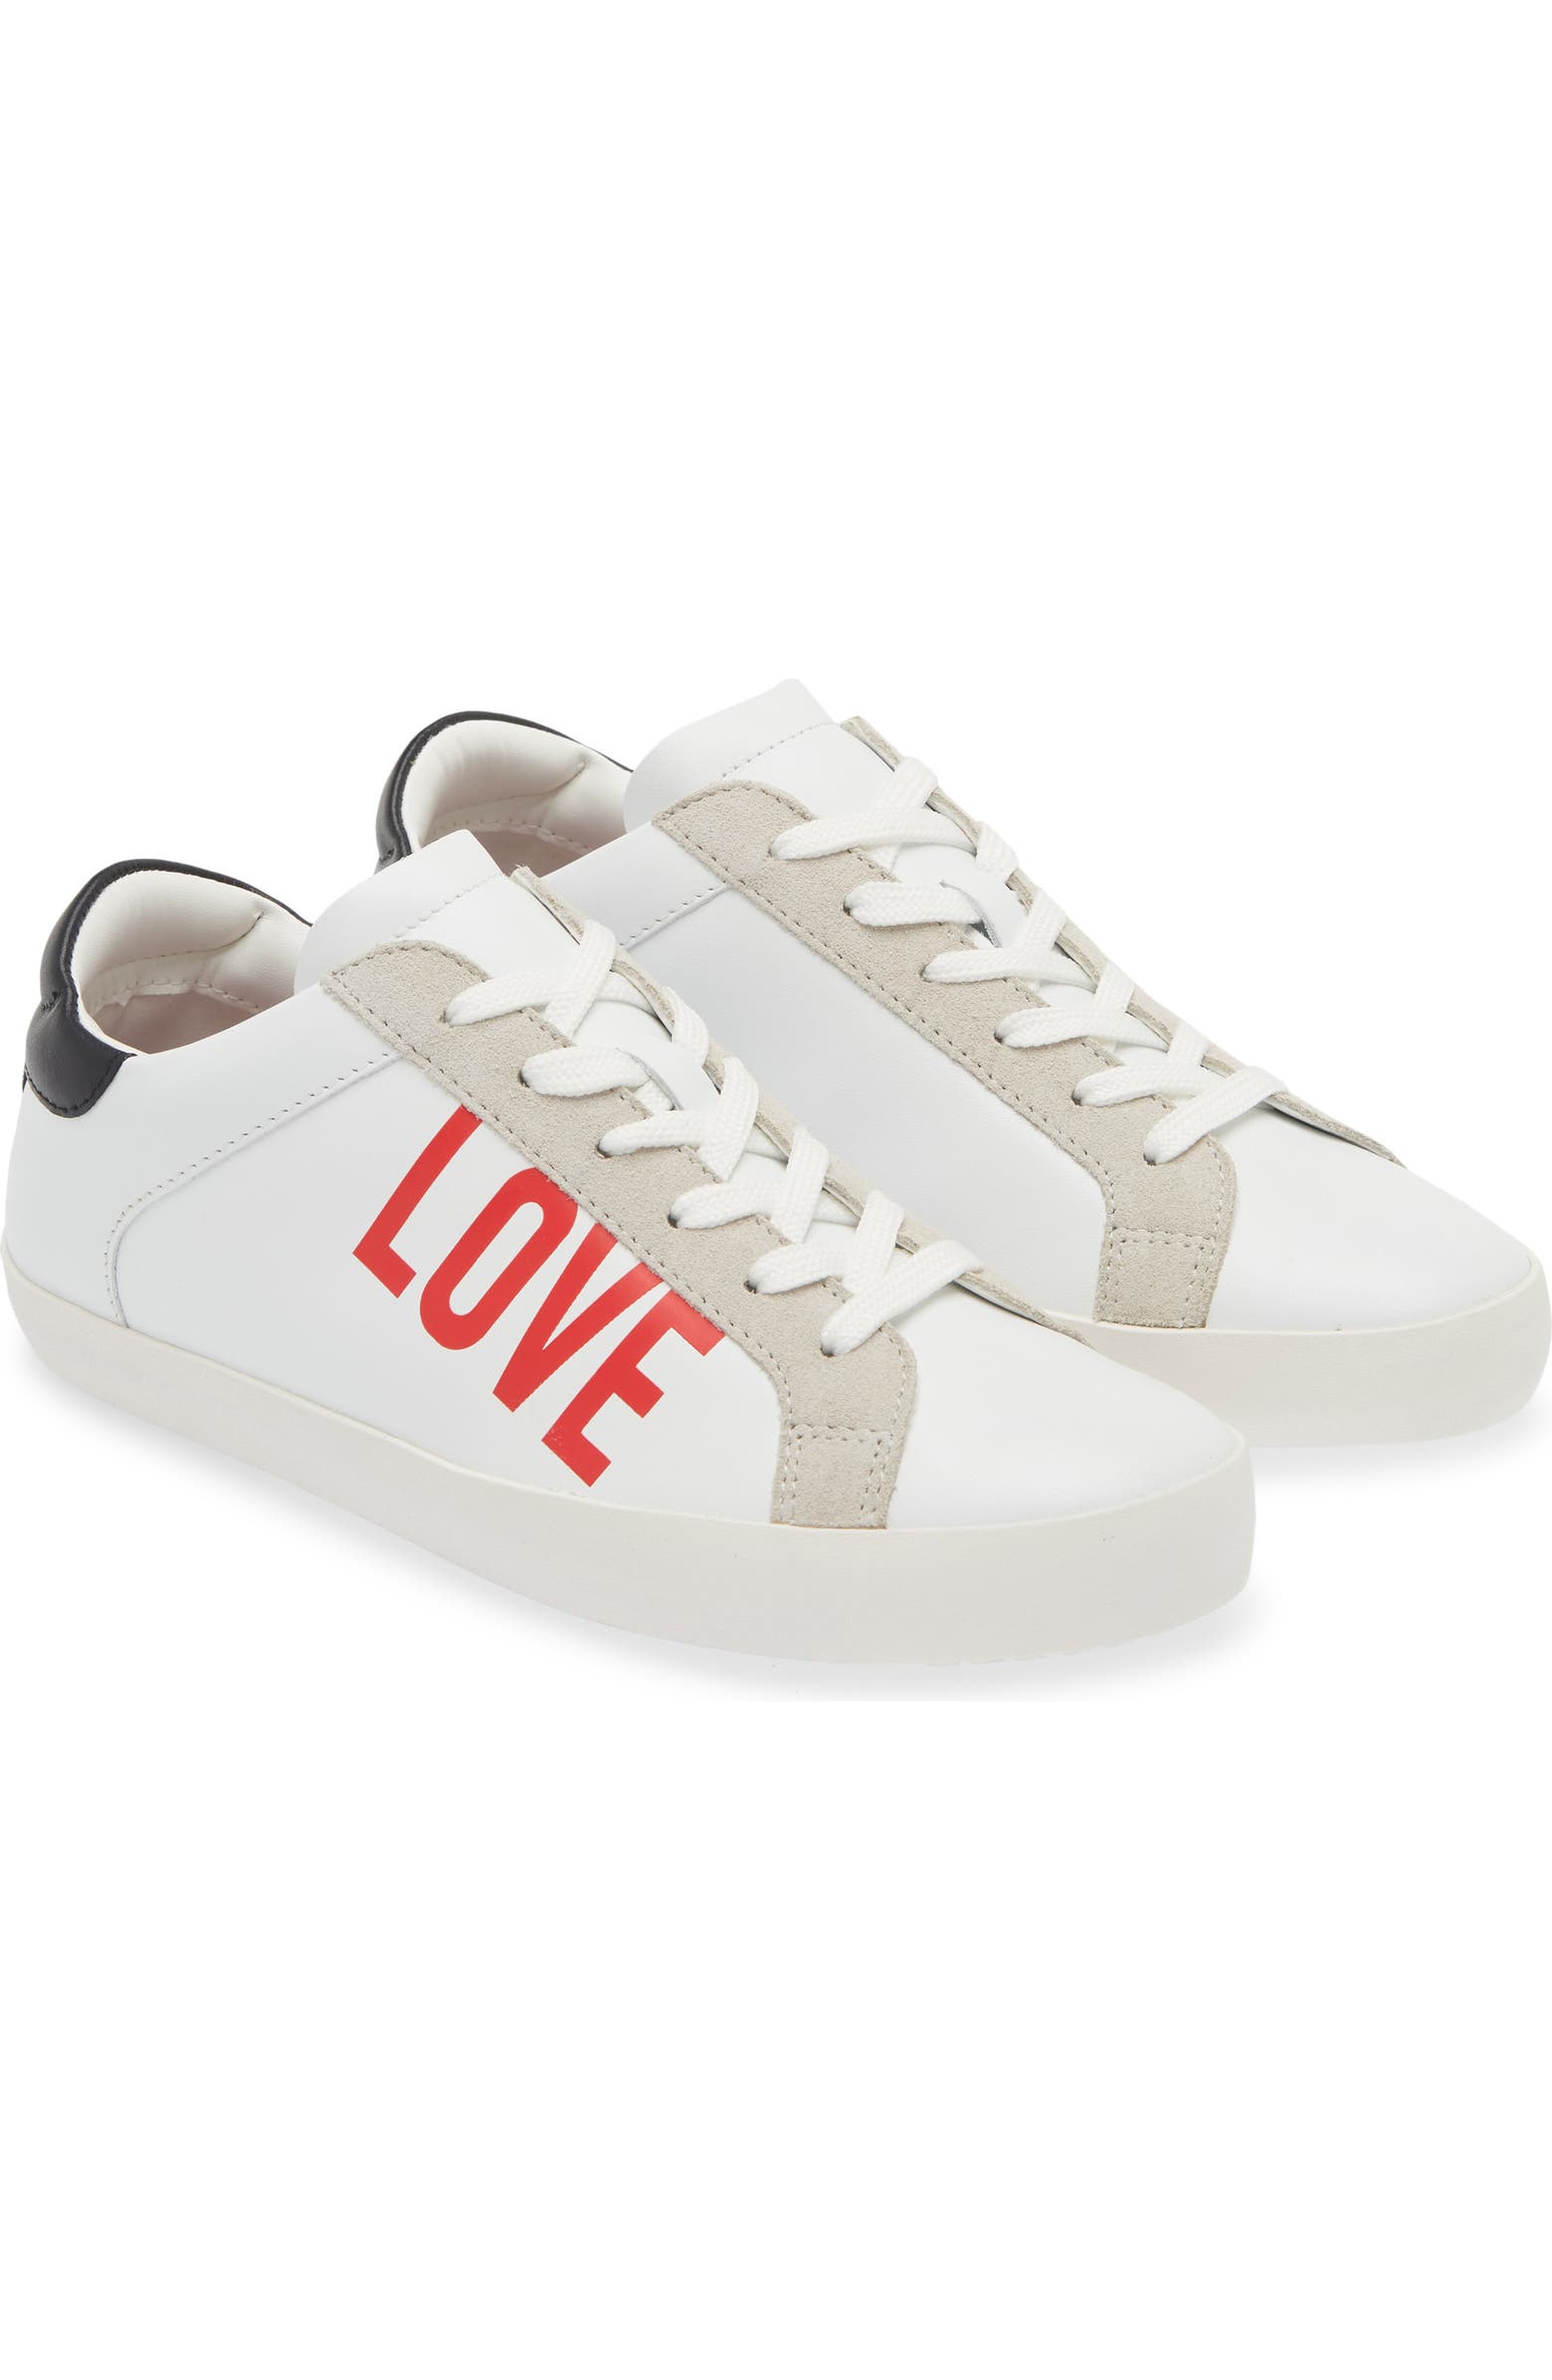 LOVE MOSCHINO Logo Low Top Sneaker (Women) | Nordstromrack